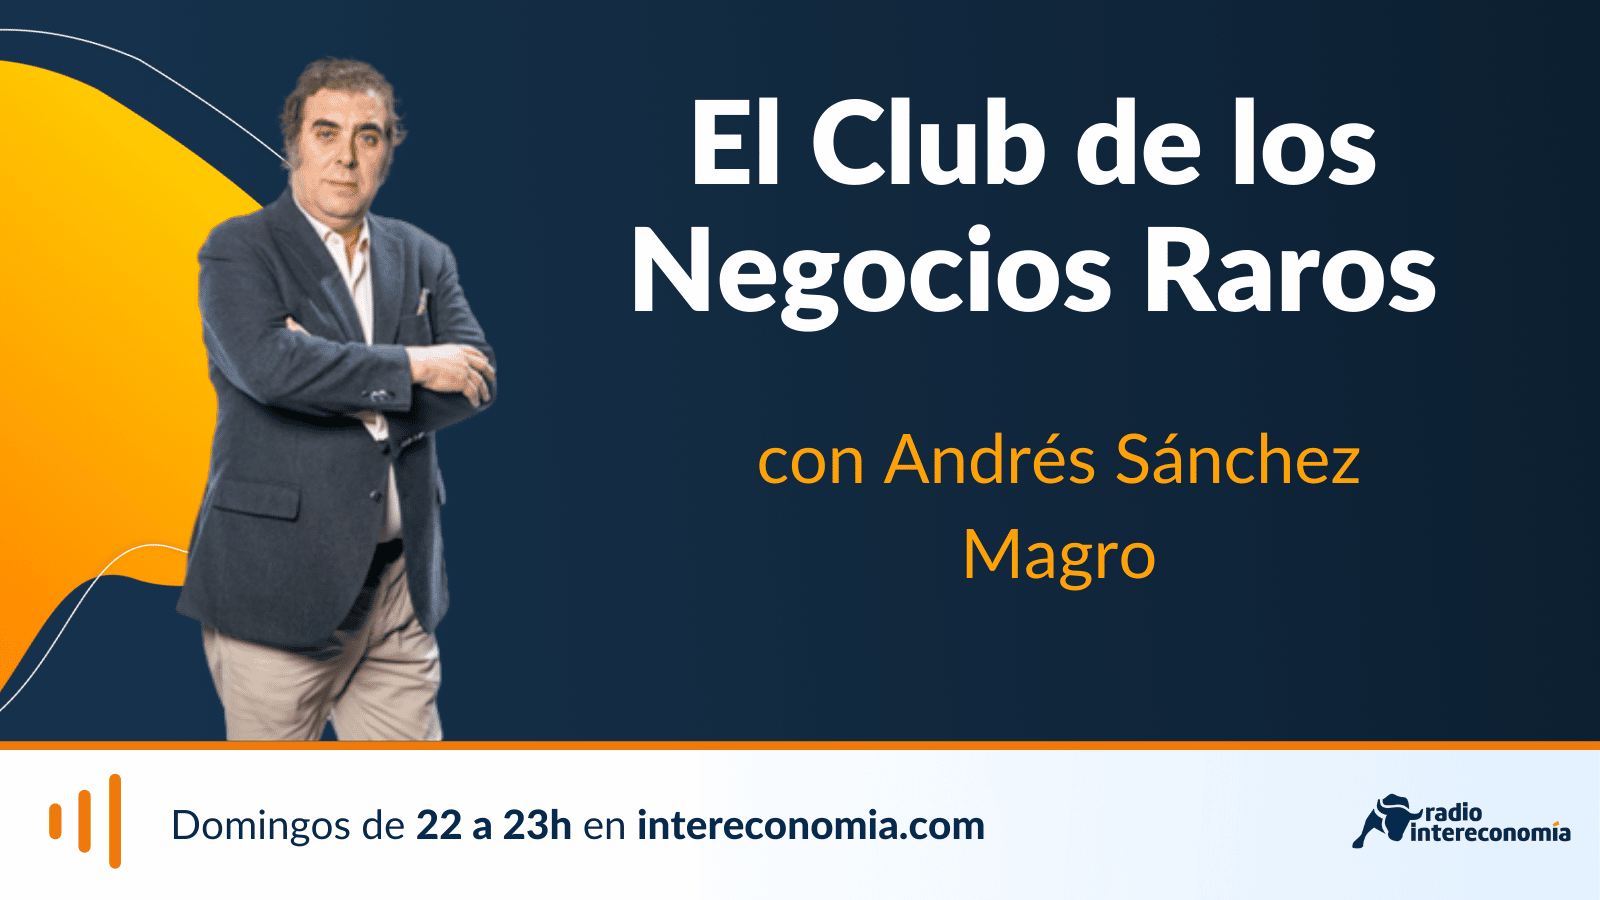 El Club de los Negocios Raros, Feria del Libro de Madrid y fallecimiento Domingo Villar 22/05/2022